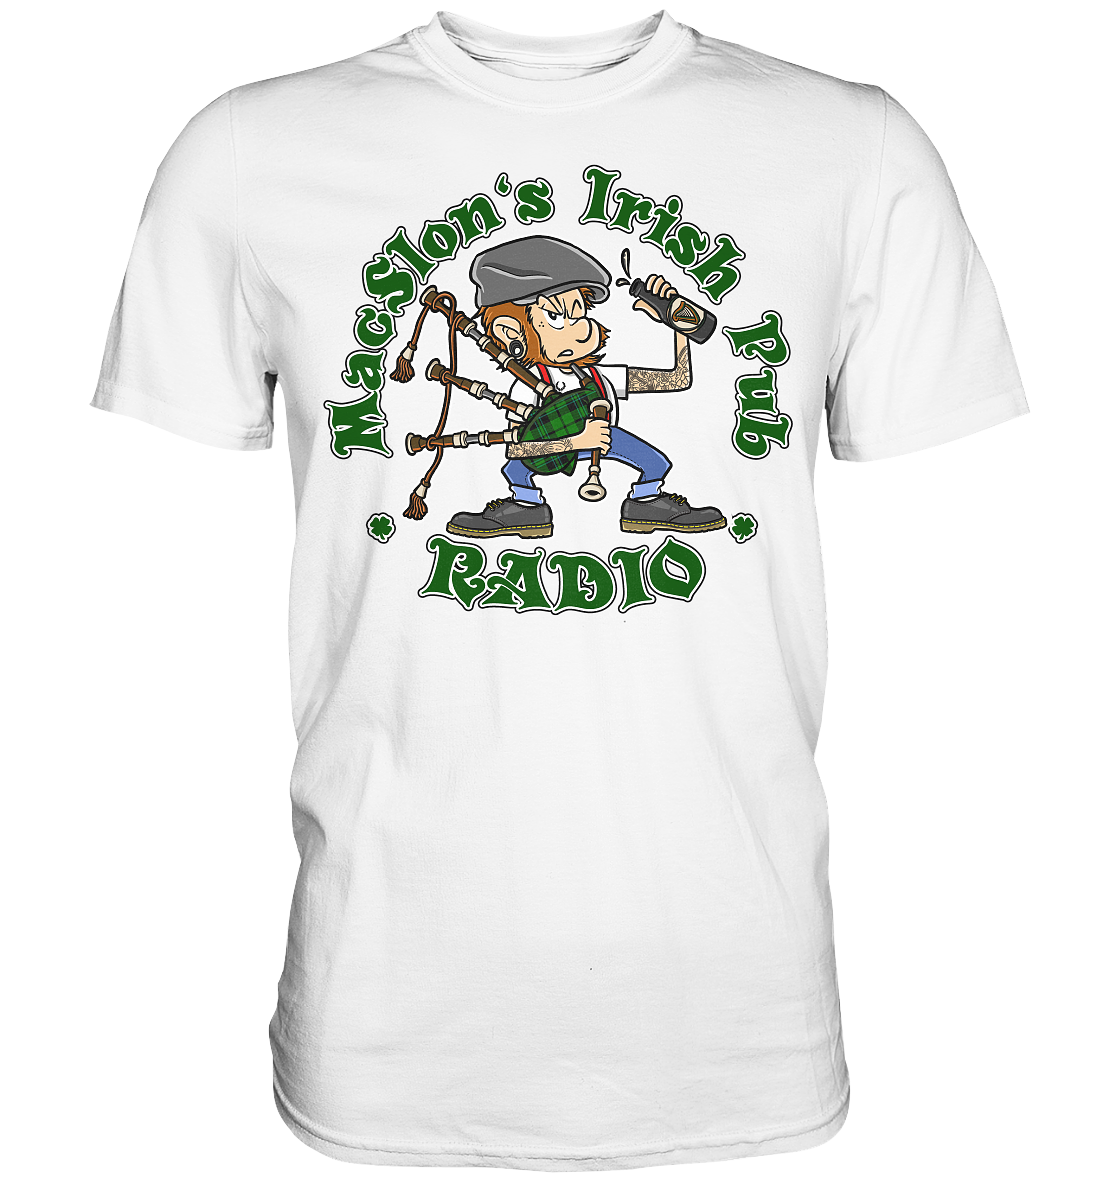 MacSlon's Radio "Classic Logo" - Premium Shirt